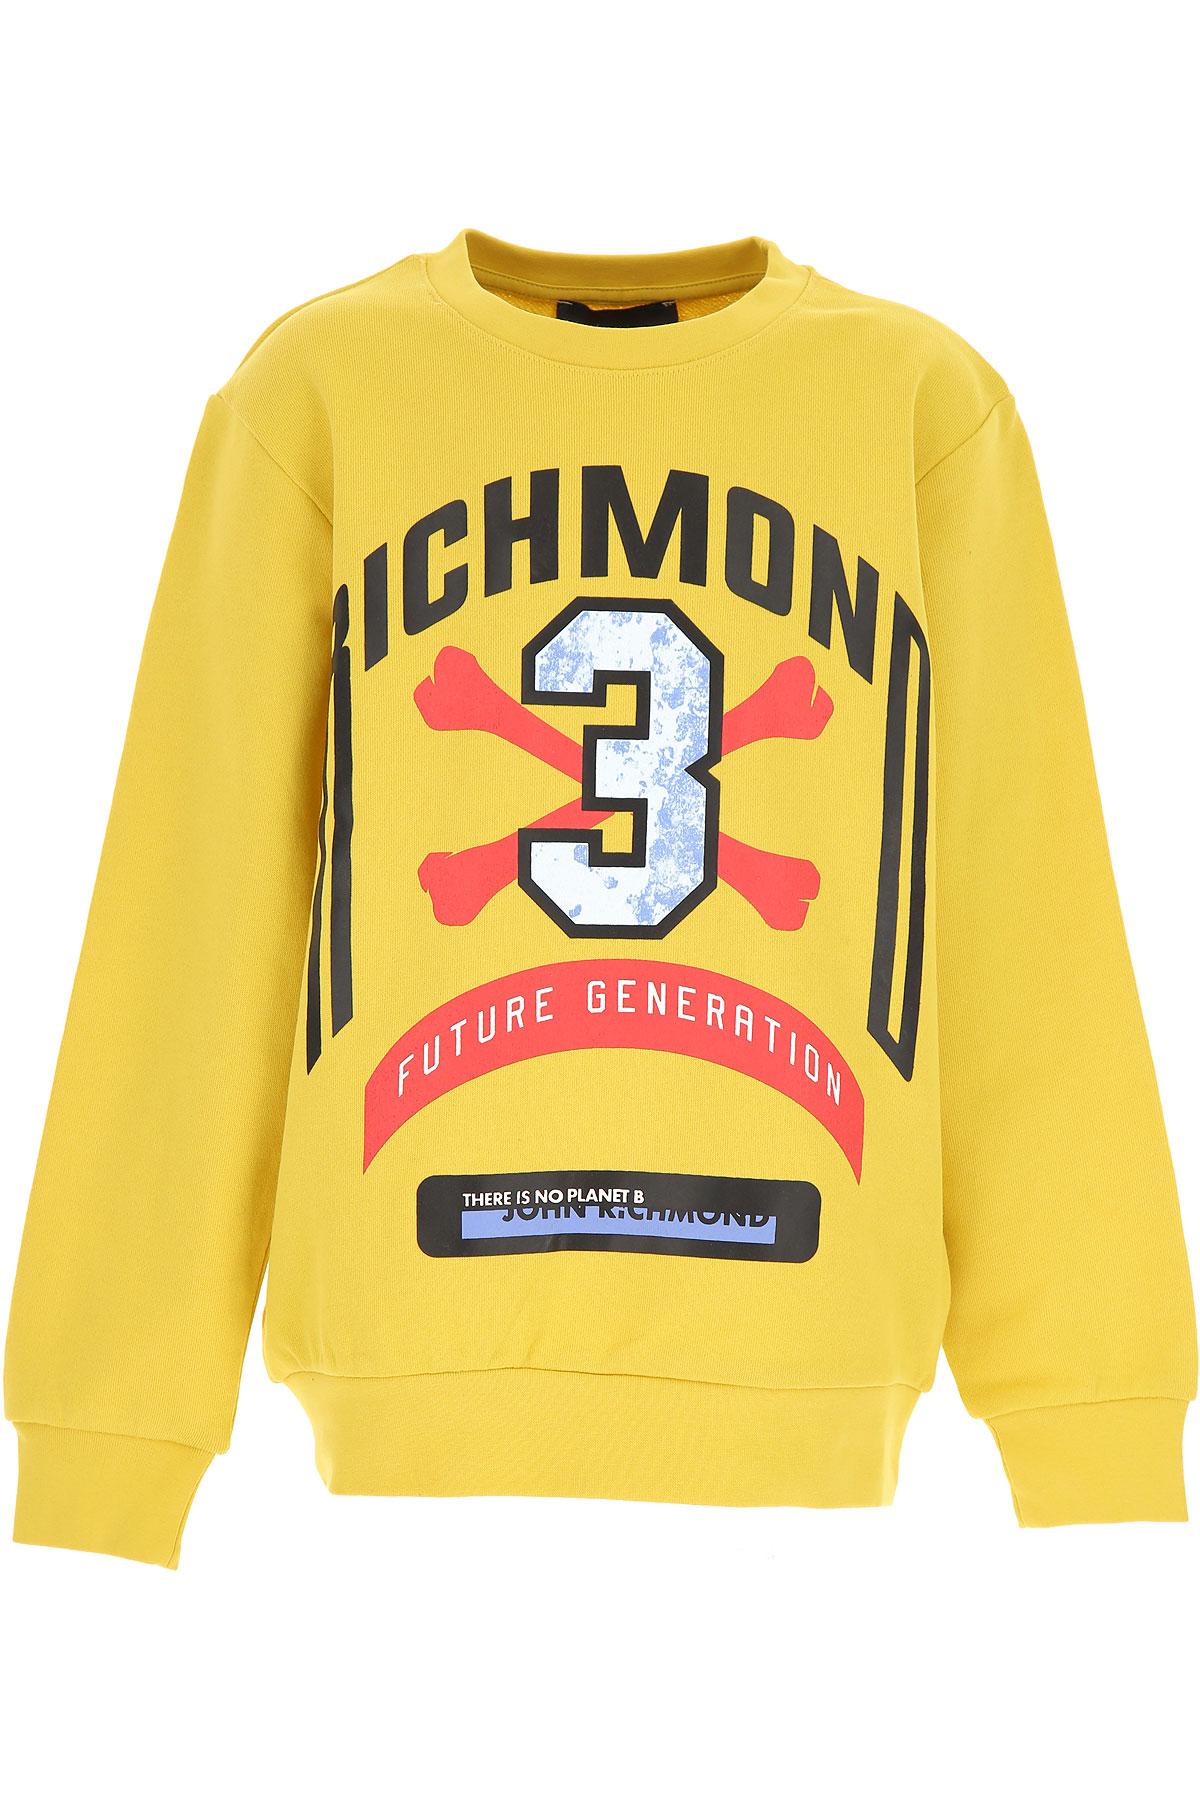 Richmond Kinder Sweatshirt & Kapuzenpullover für Jungen Günstig im Sale, Bambus, Baumwolle, 2017, 10Y 12Y 16Y 8Y